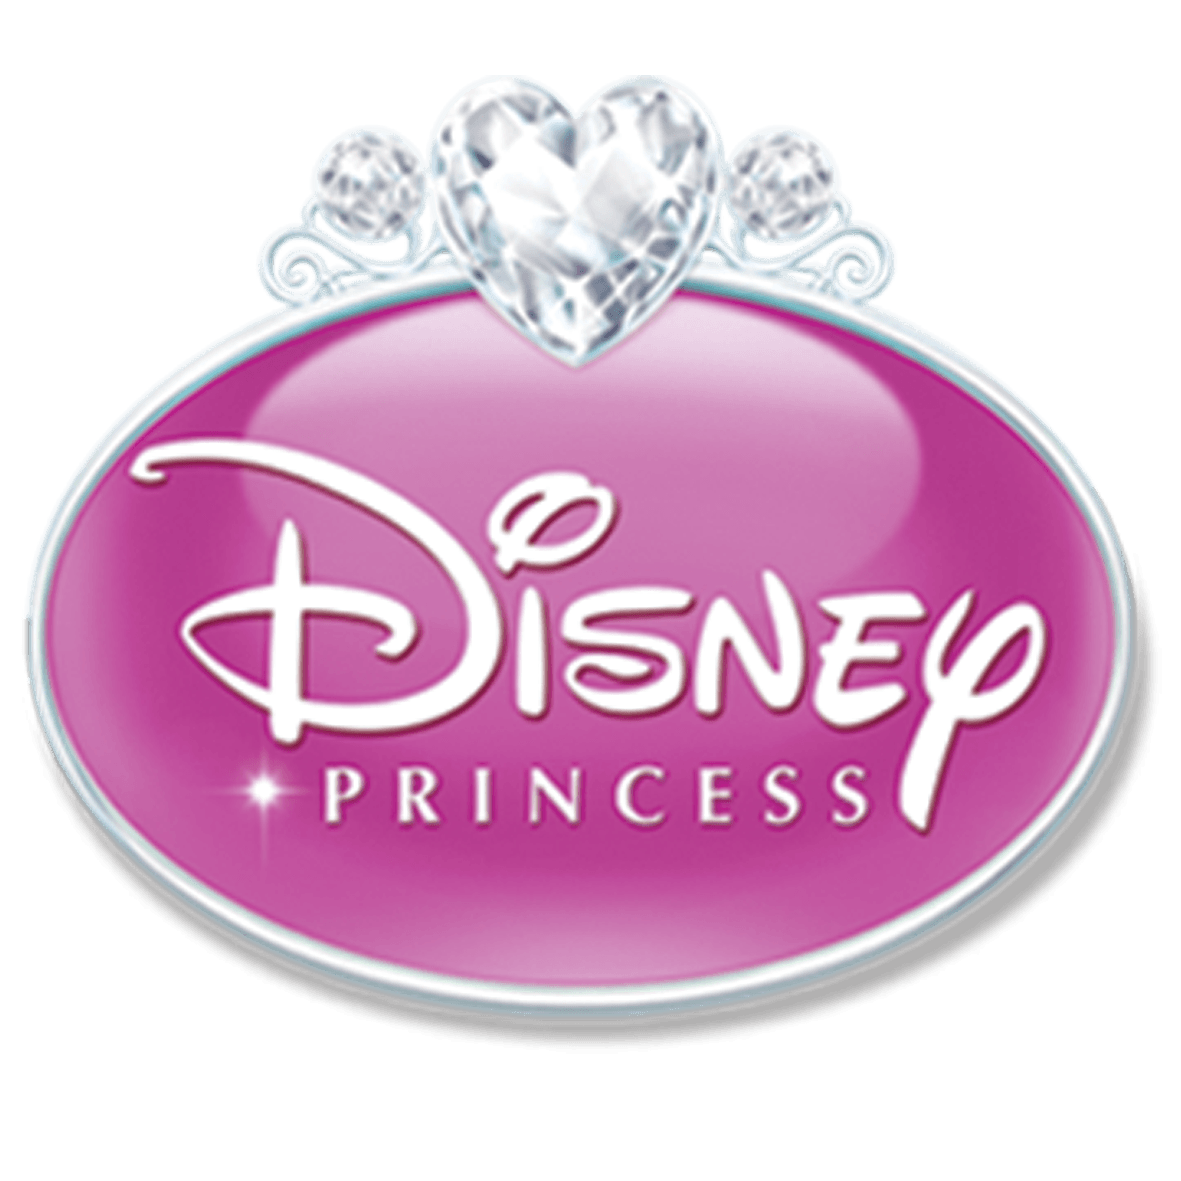 Disney Princess Logo - Image - Disney Princess 2011 logo.png | Logopedia | FANDOM powered ...